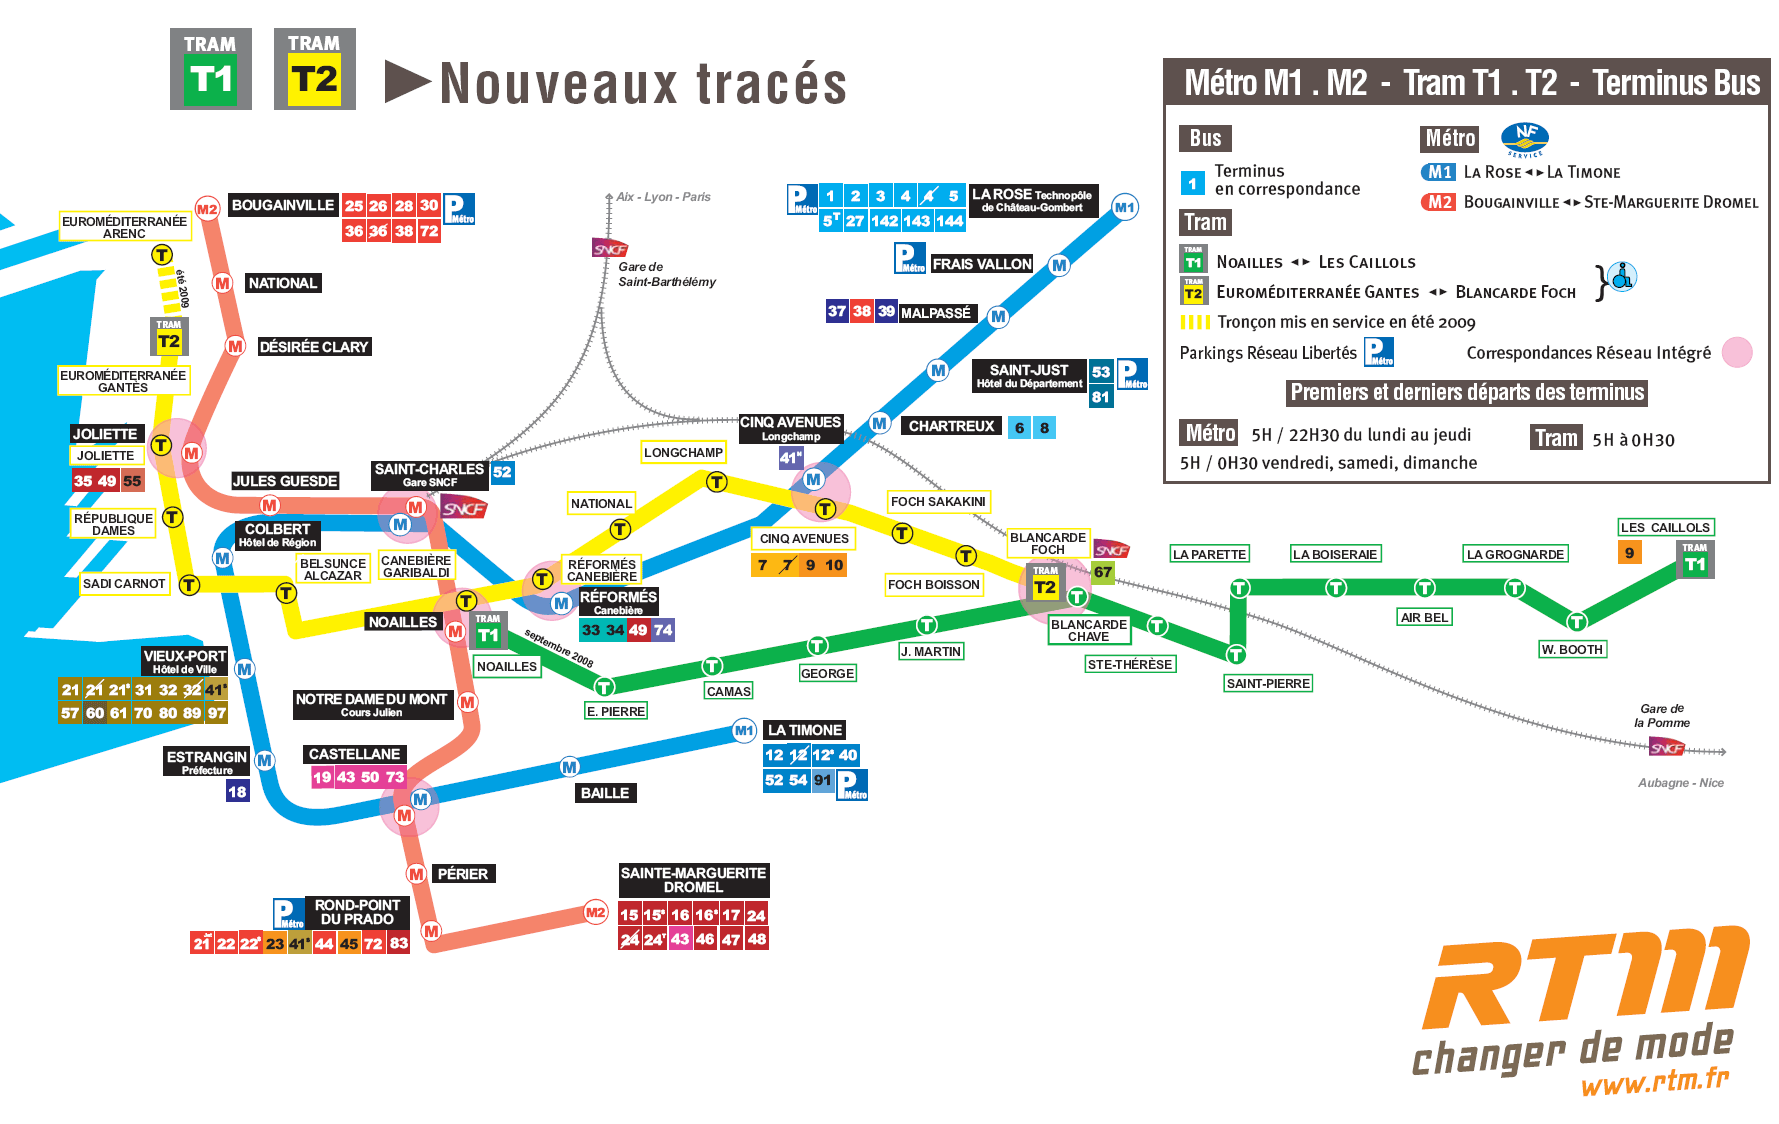 Подробная схема метро Марселя